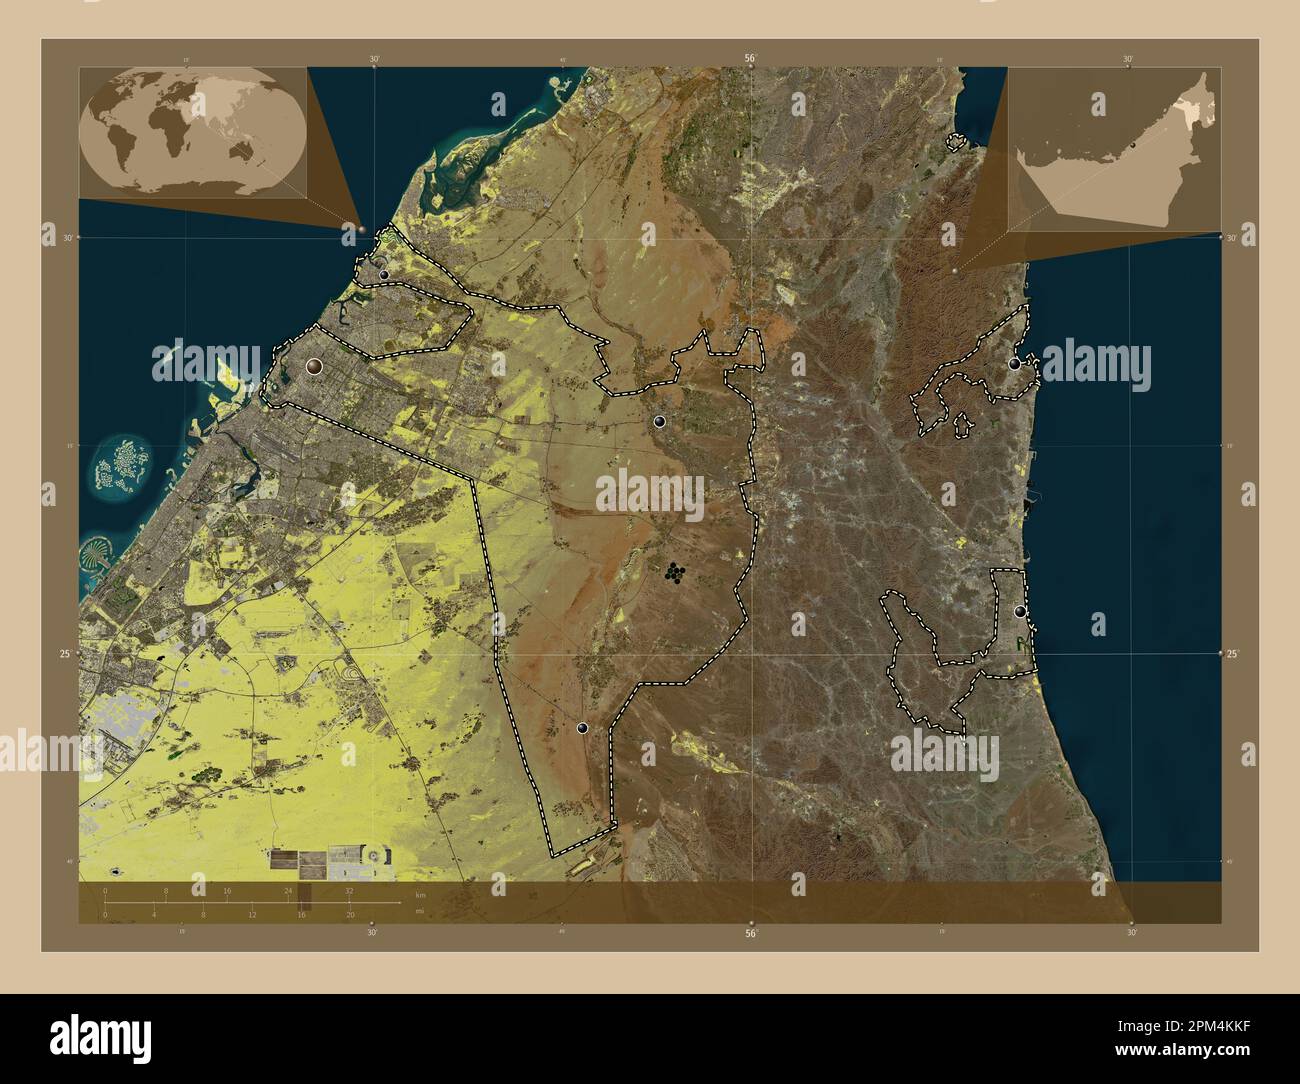 Sharjah, Emirat der Vereinigten Arabischen Emirate. Satellitenkarte mit niedriger Auflösung. Standorte der wichtigsten Städte der Region. Eckkarten für zusätzliche Standorte Stockfoto